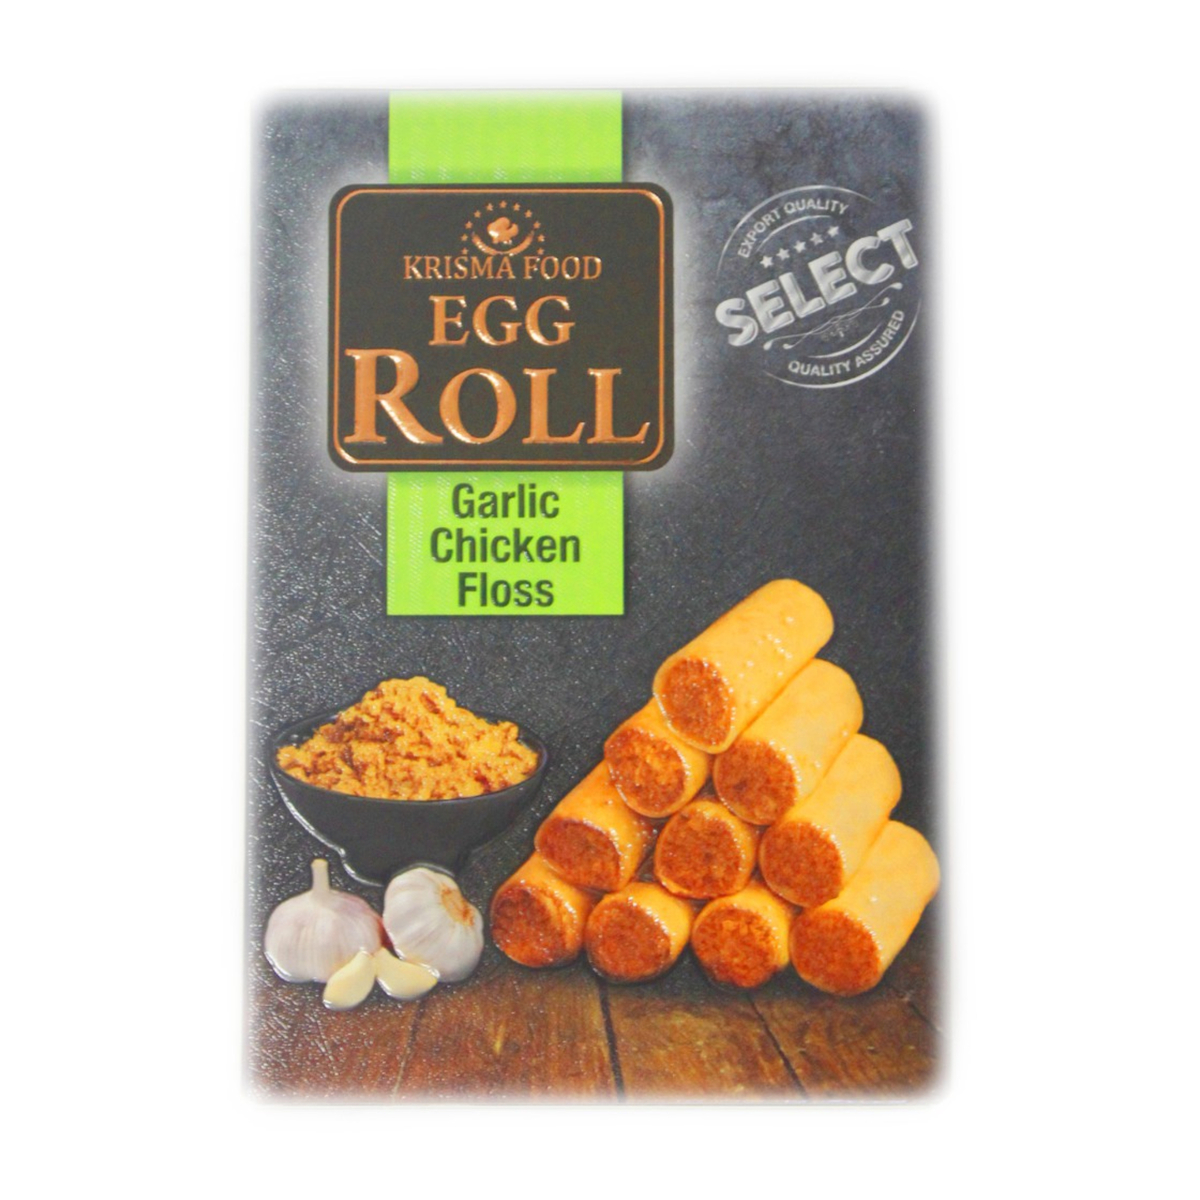 Krisma Food Egg Roll Garlic Chiken Floss 80g